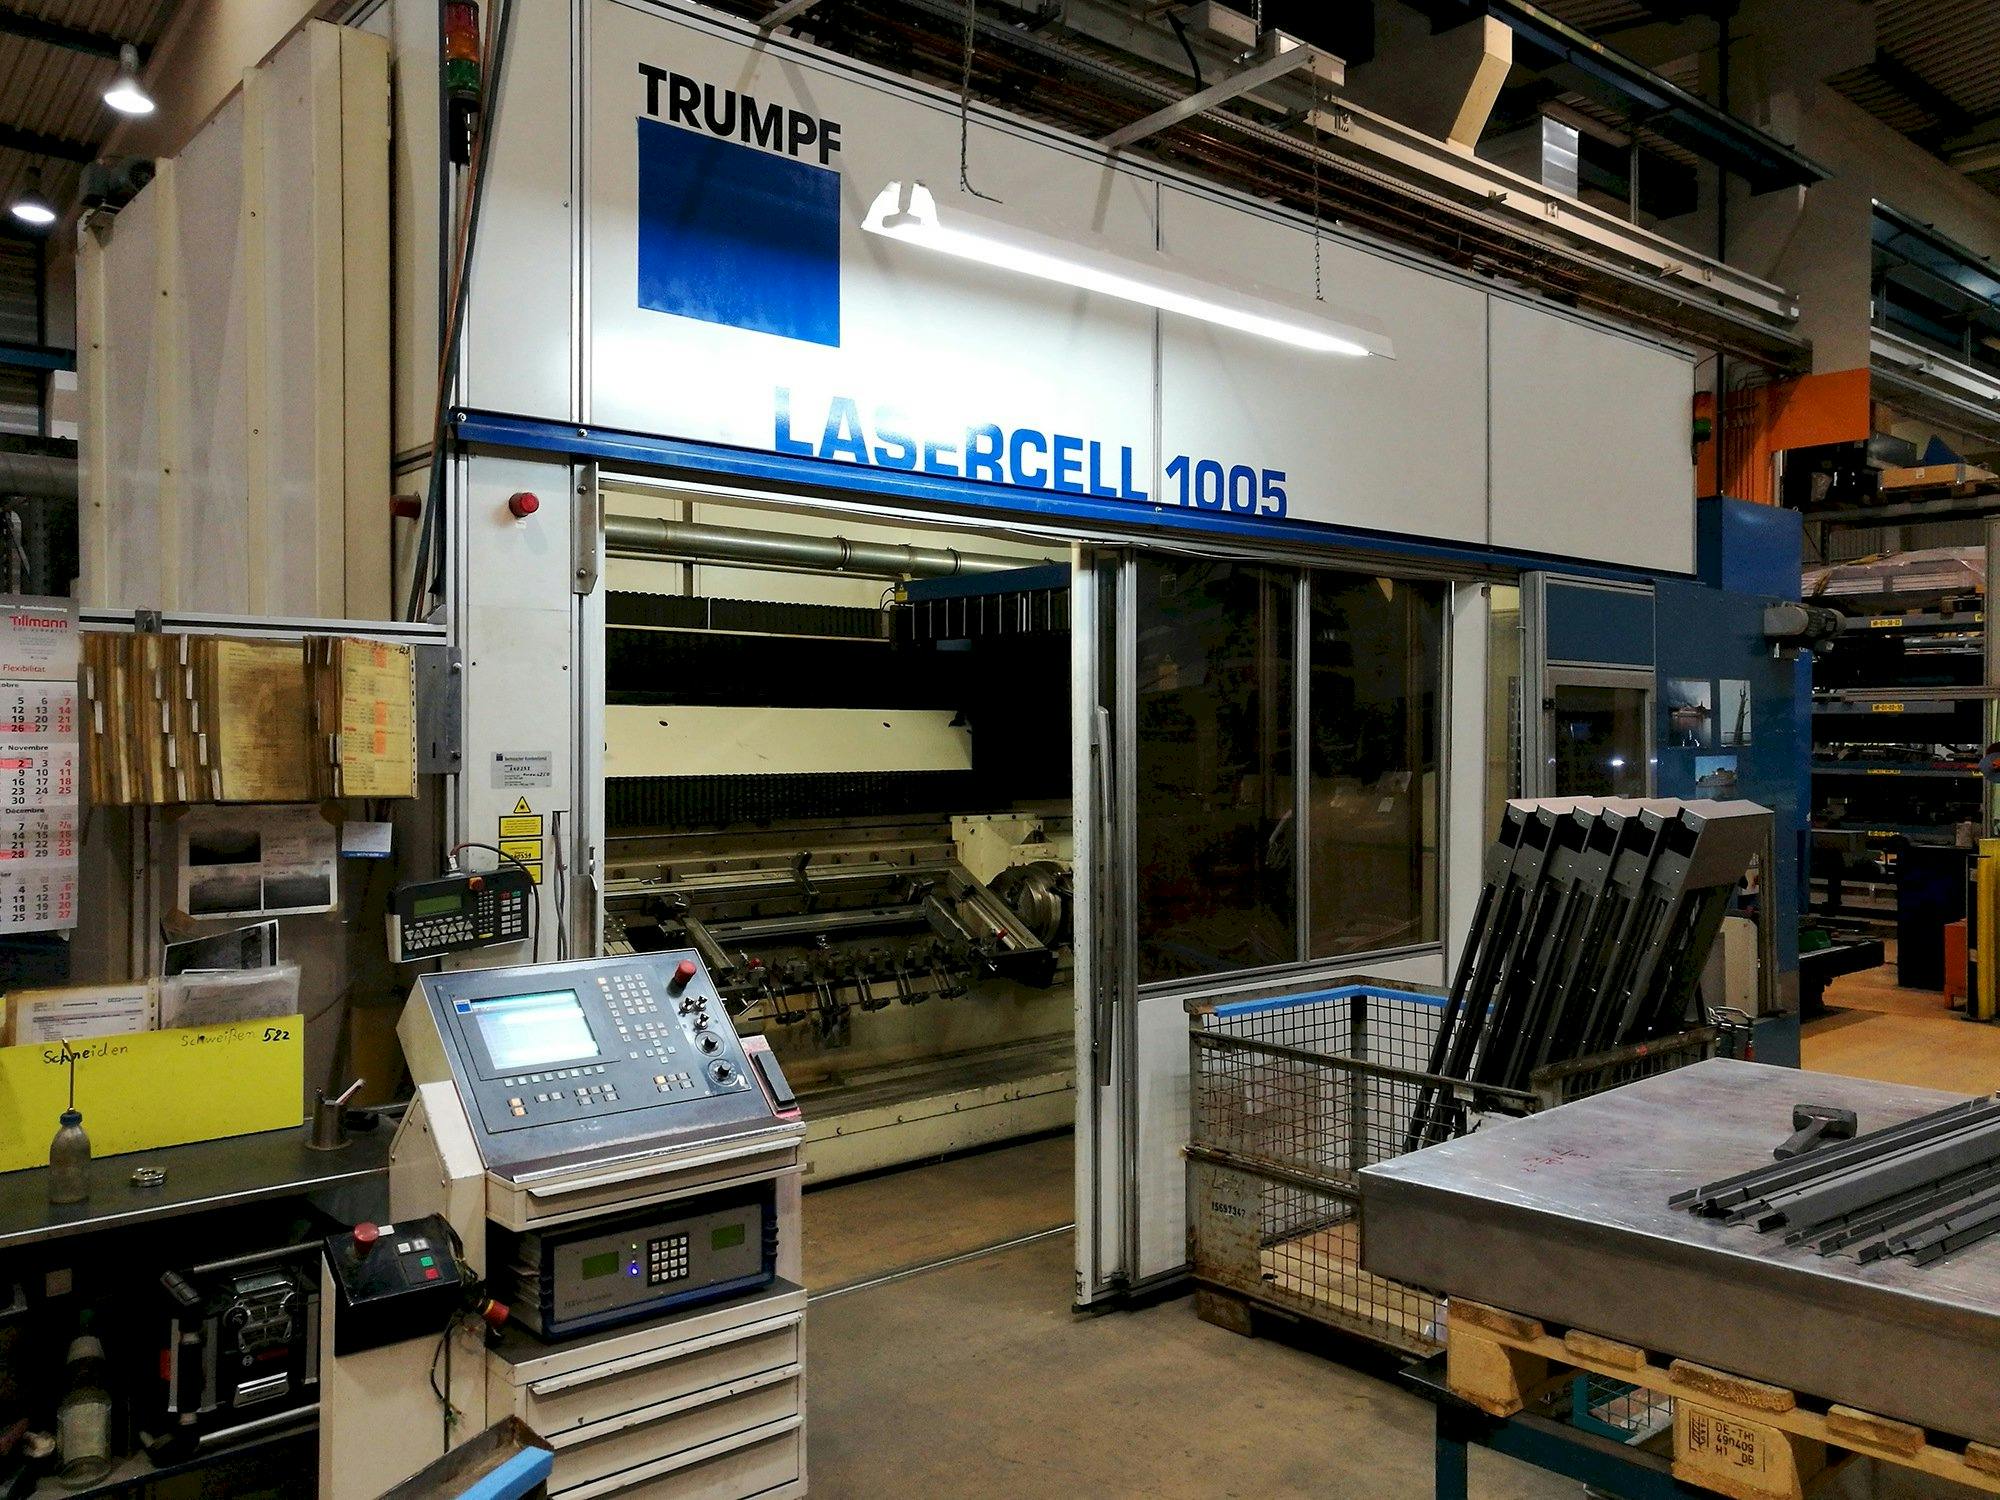 Links zicht  van Trumpf Lasercell TLC 1005 machine